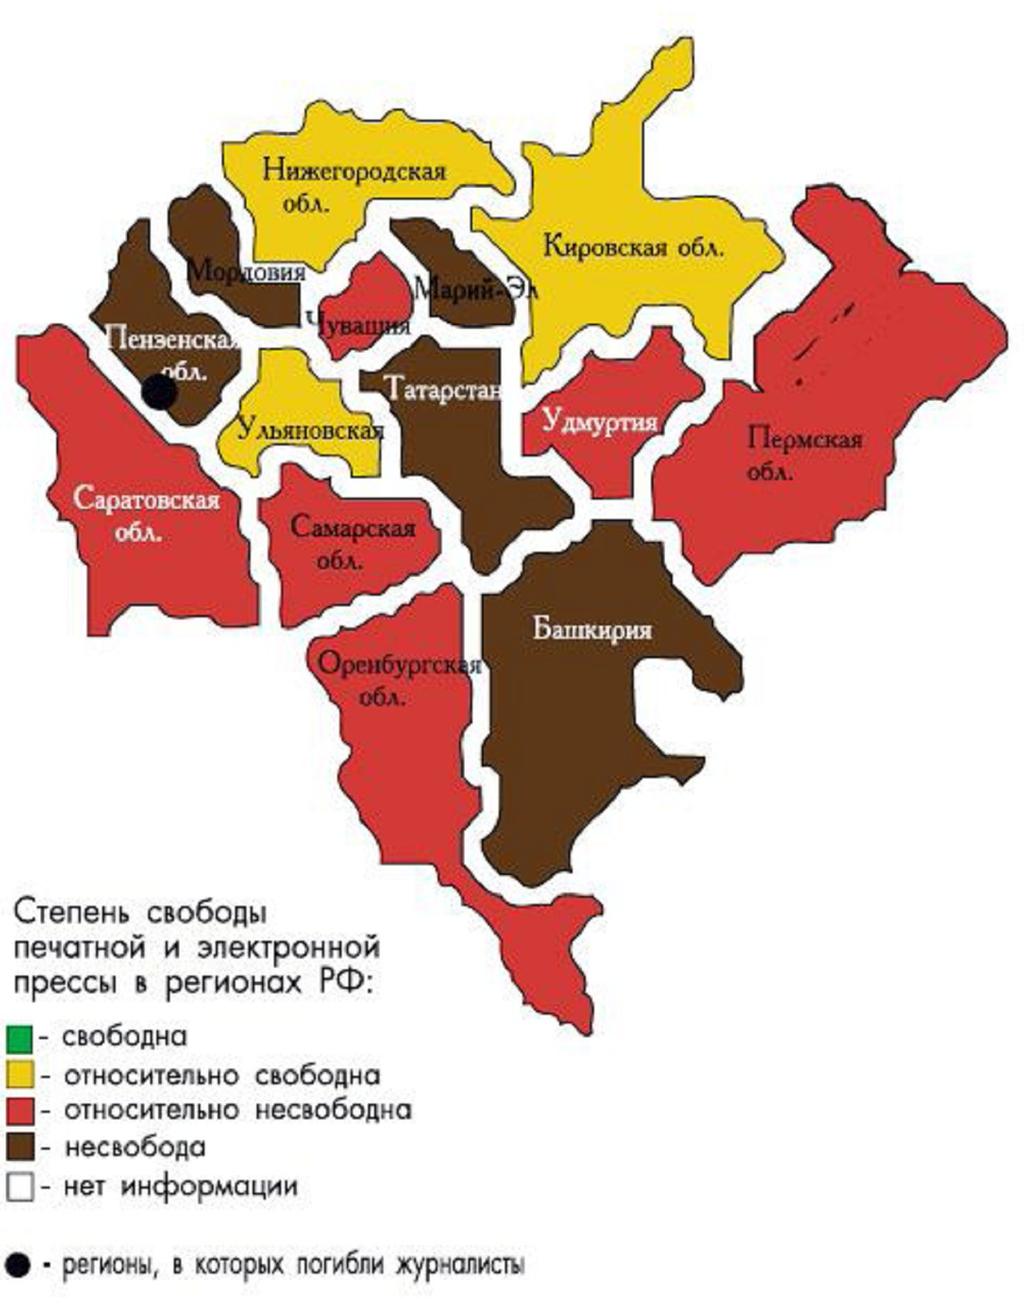 Die Karte Glaosnost für den Priwolschskij Bezirk Bevollmächtigter des Präsidenten: A.